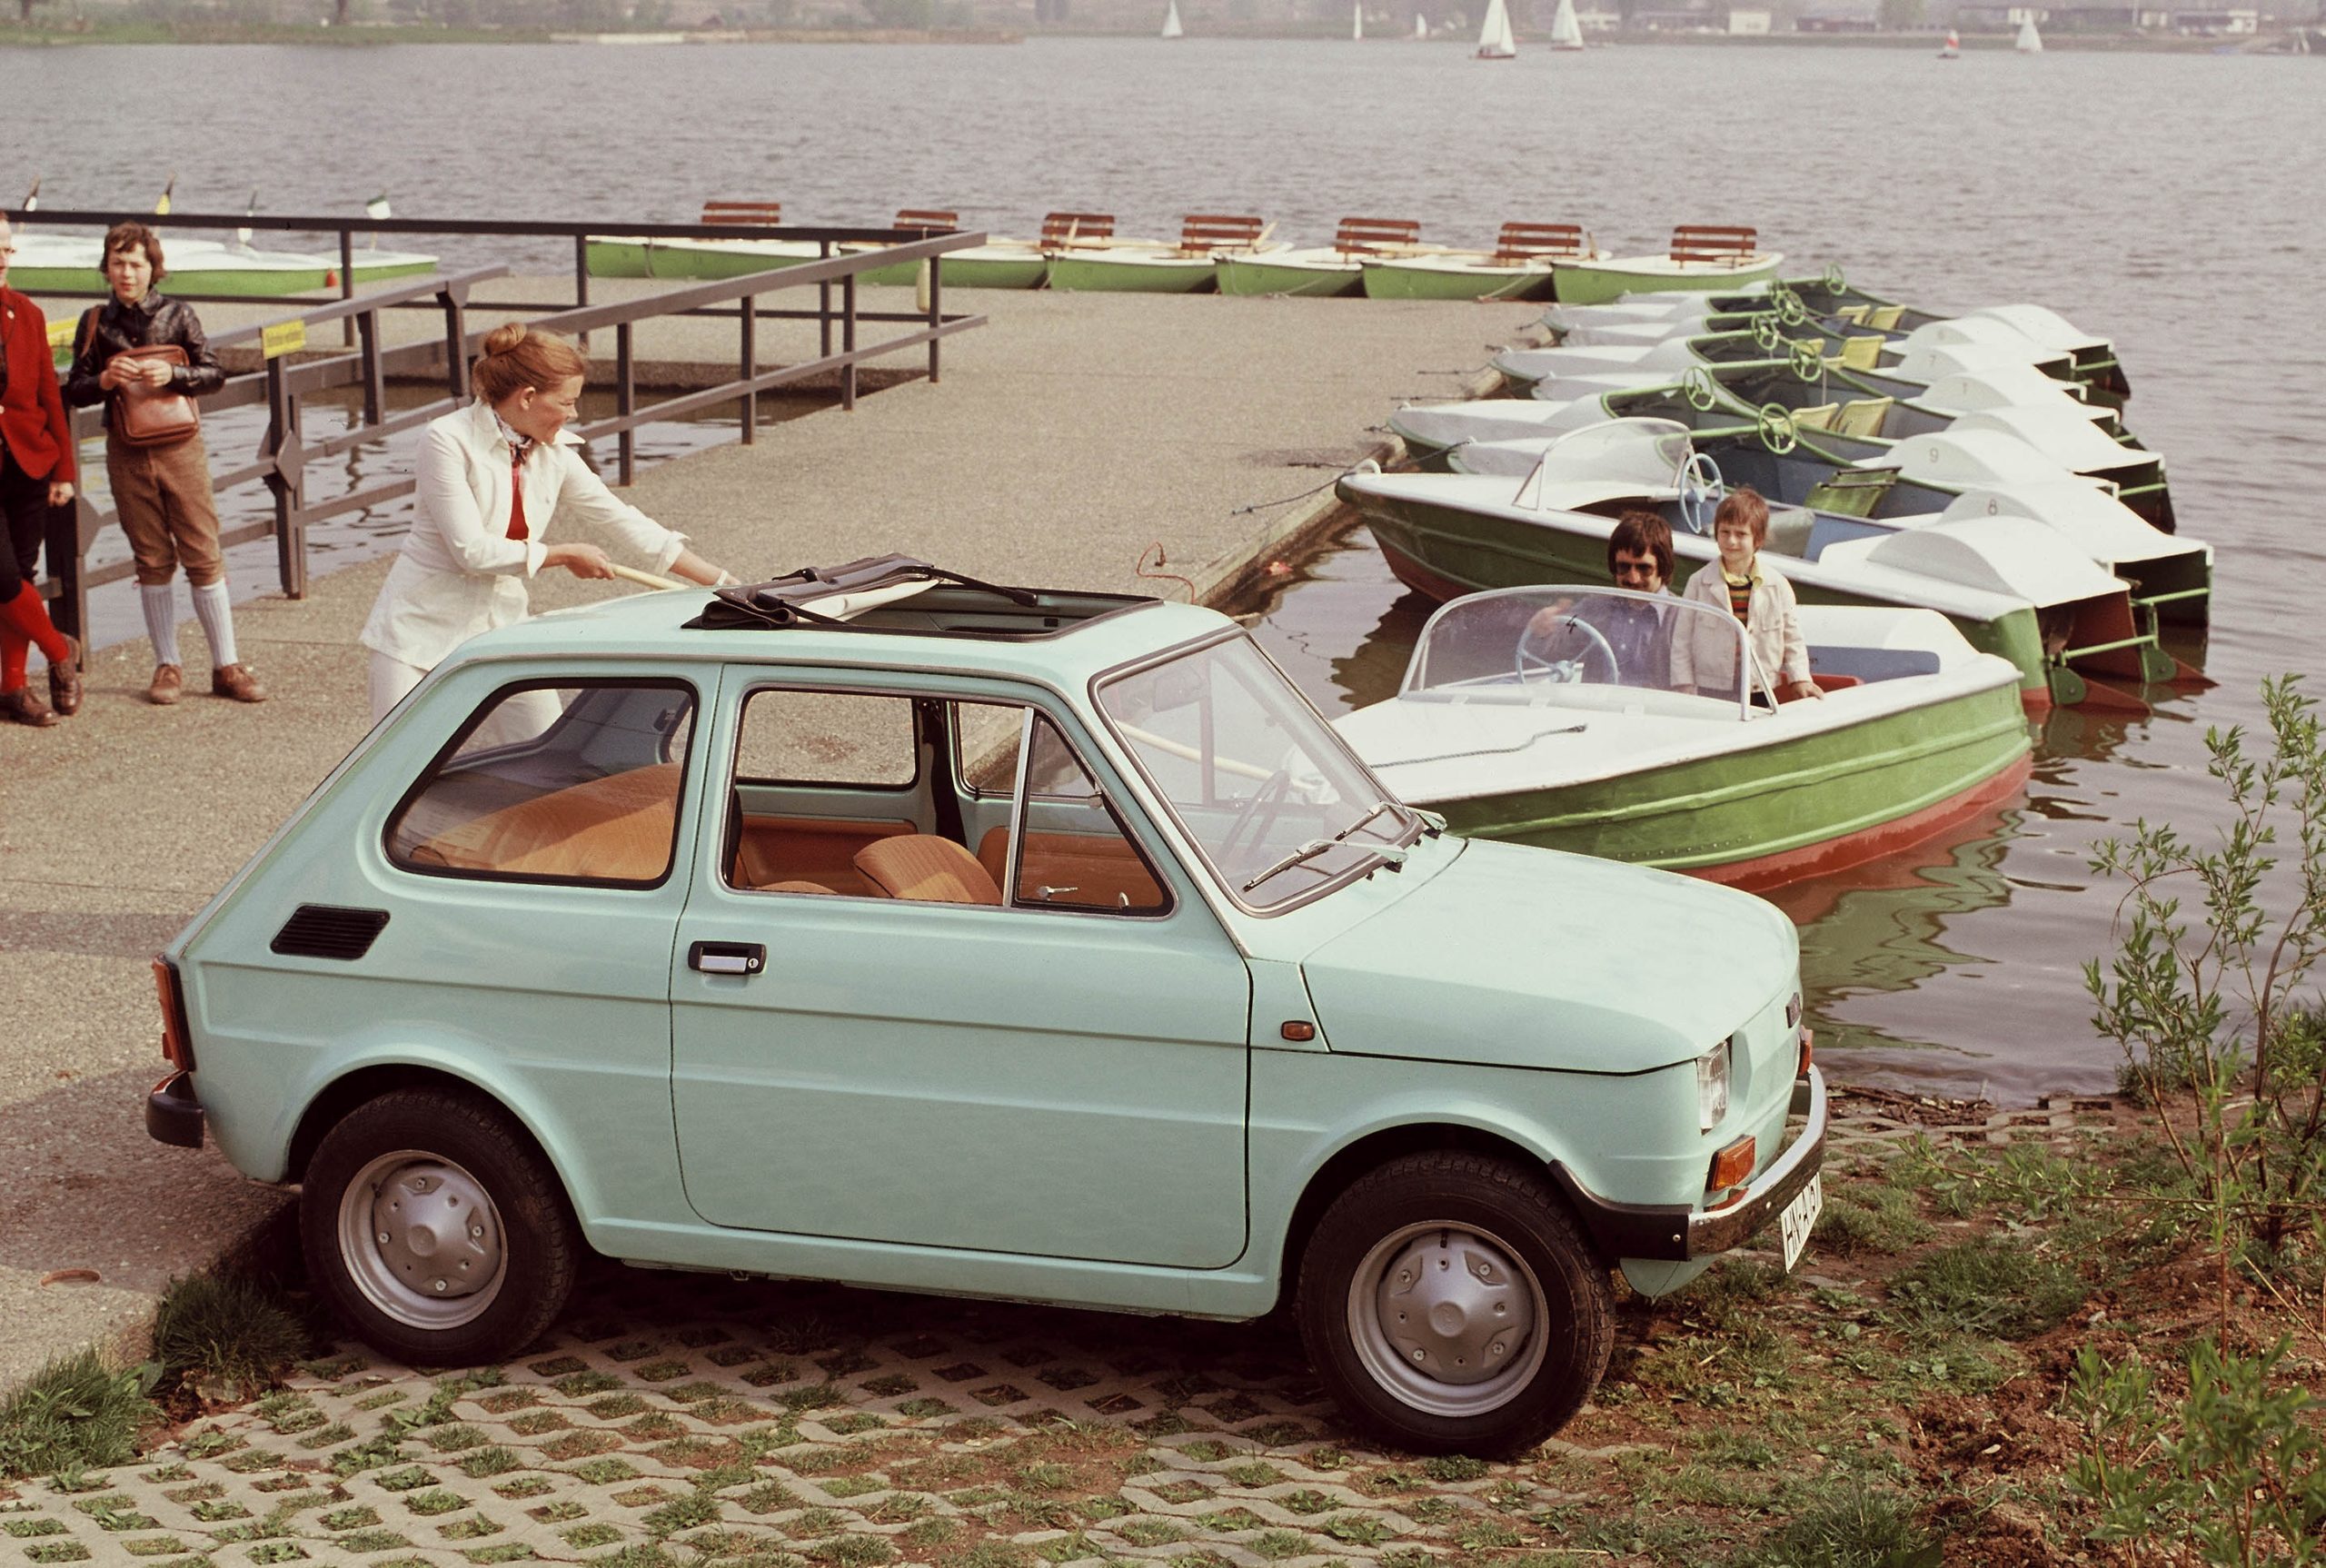 Accadde oggi: 22 settembre 2000, termina la produzione della Fiat 126